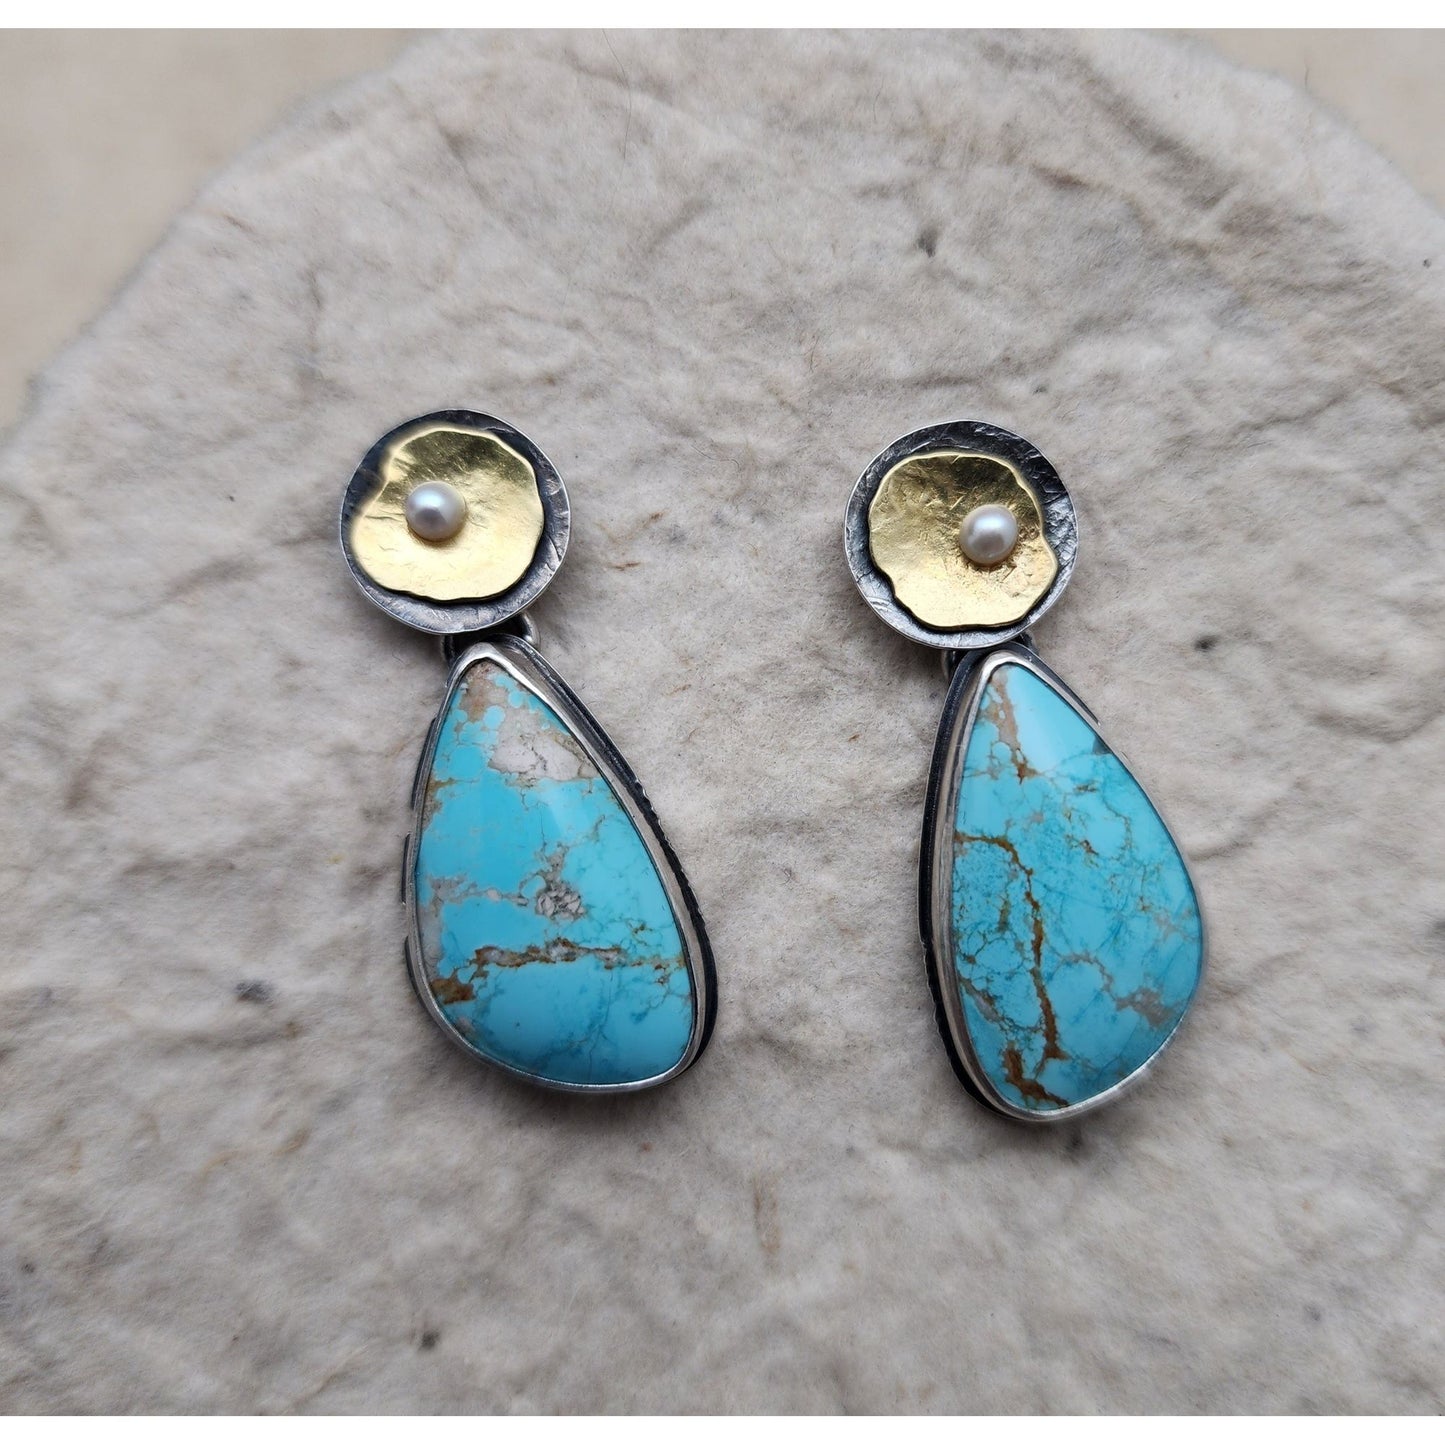 Amaroo Turquoise earrings